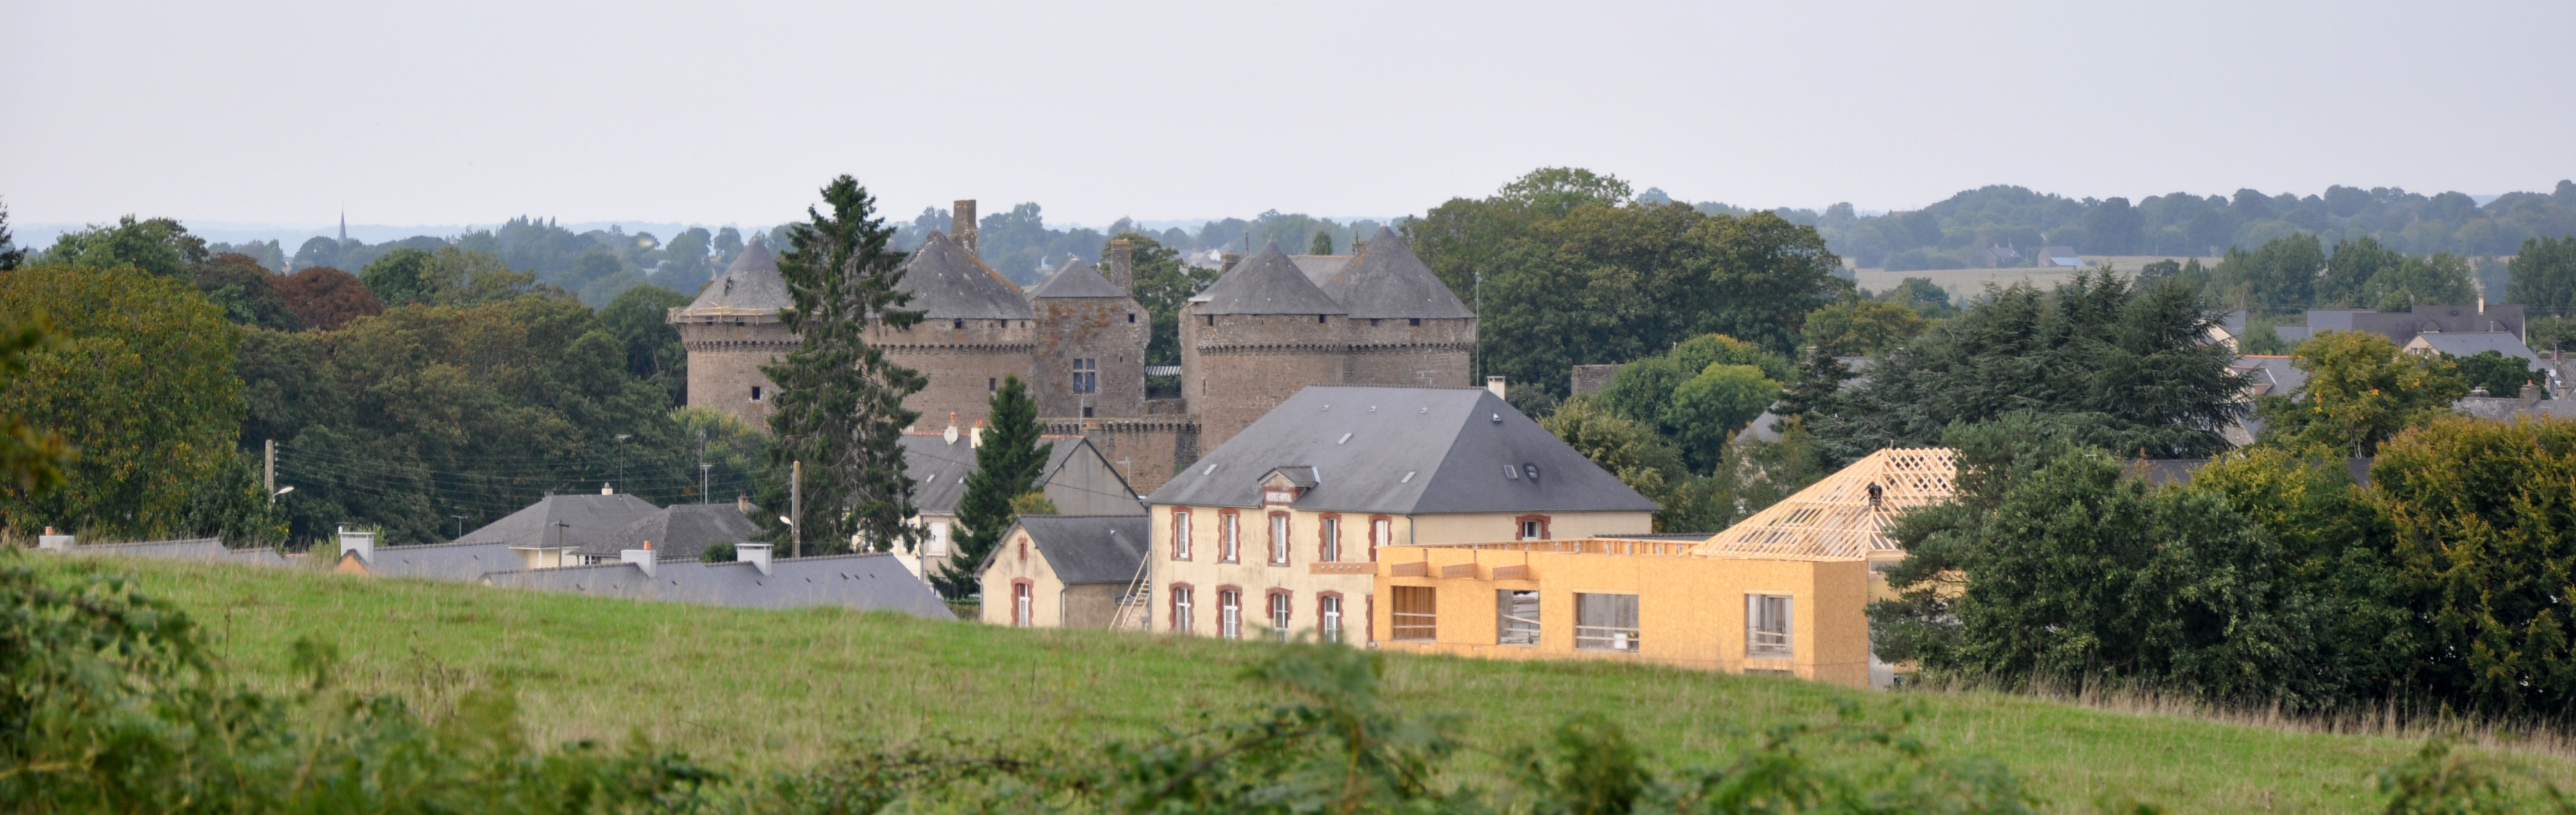 Lassay-les-Châteaux, un repère médiéval sur le plateau et un passage obligé entre Maine et Normandie en grand format (nouvelle fenêtre)